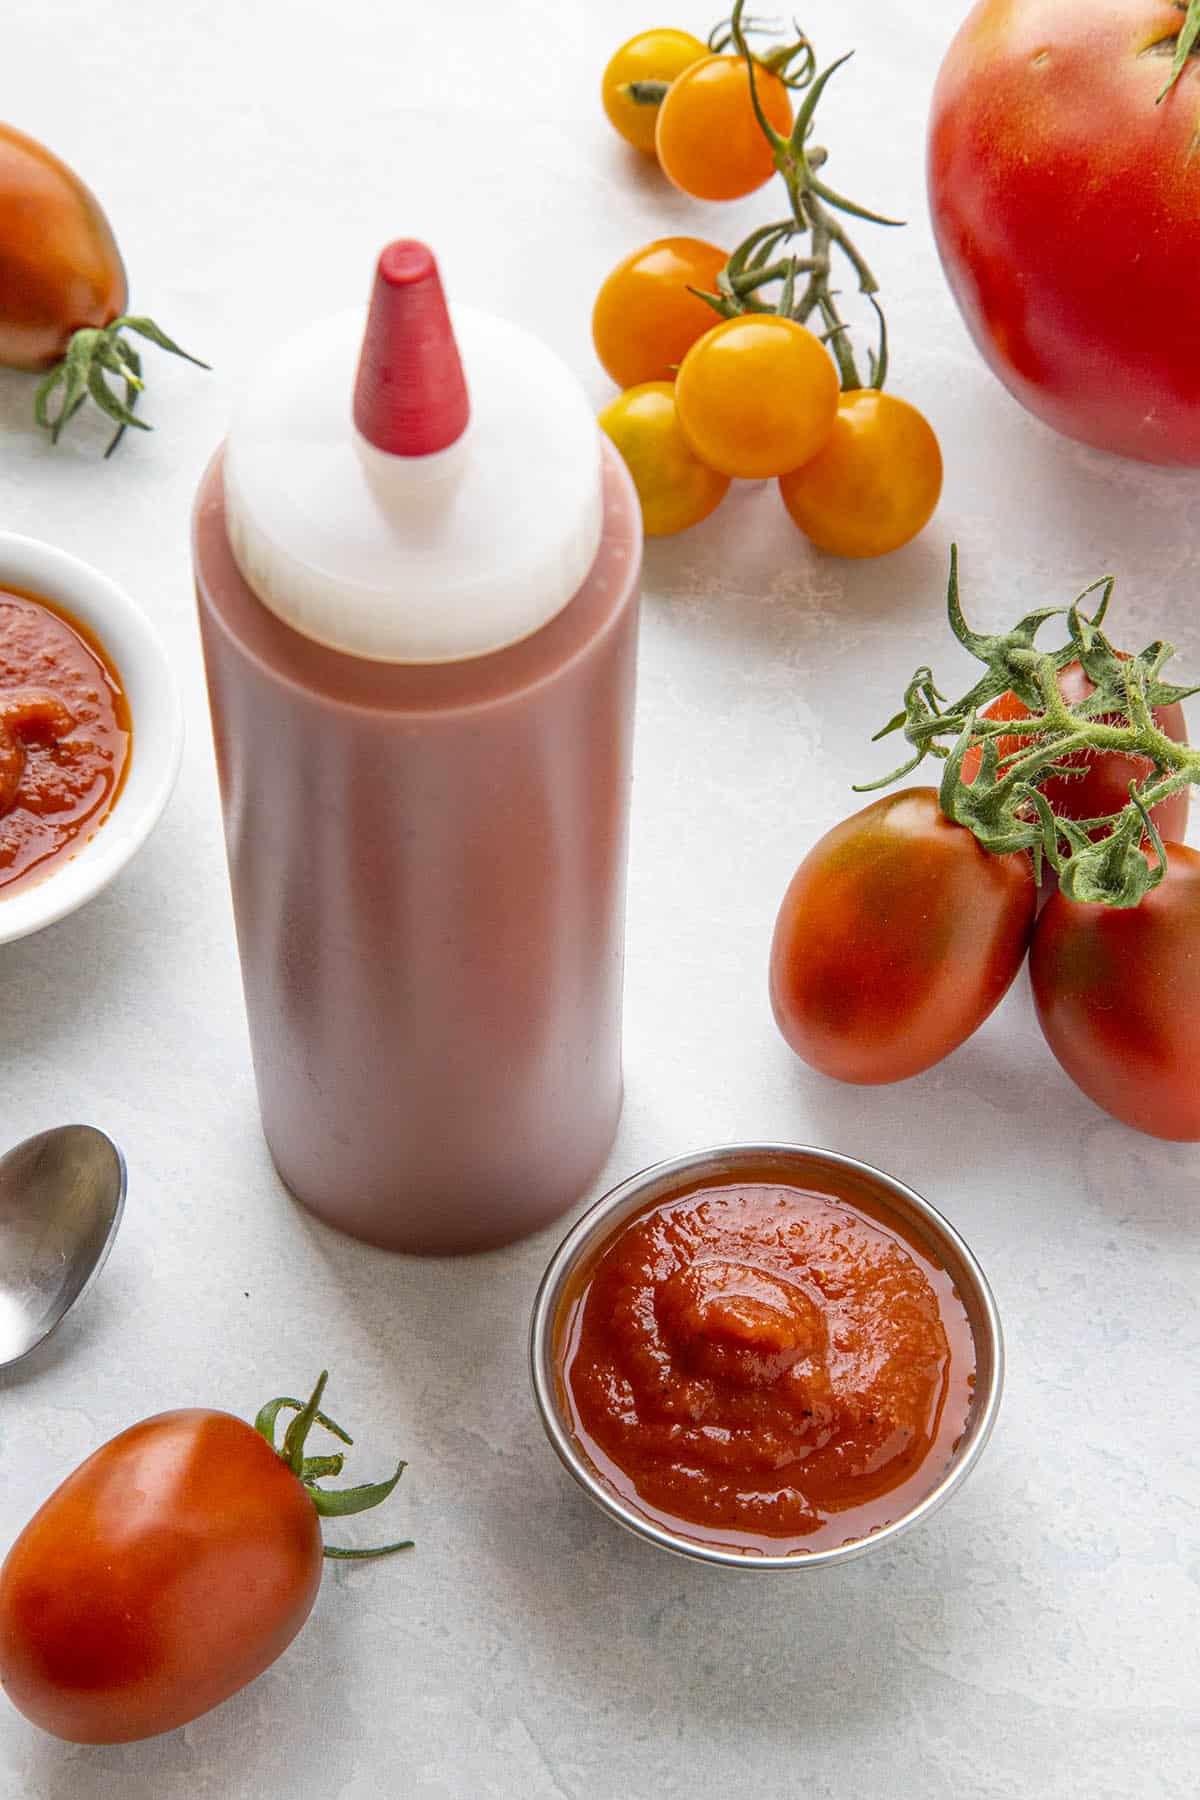 Homemade Ketchup Recipe - How to Make Ketchup